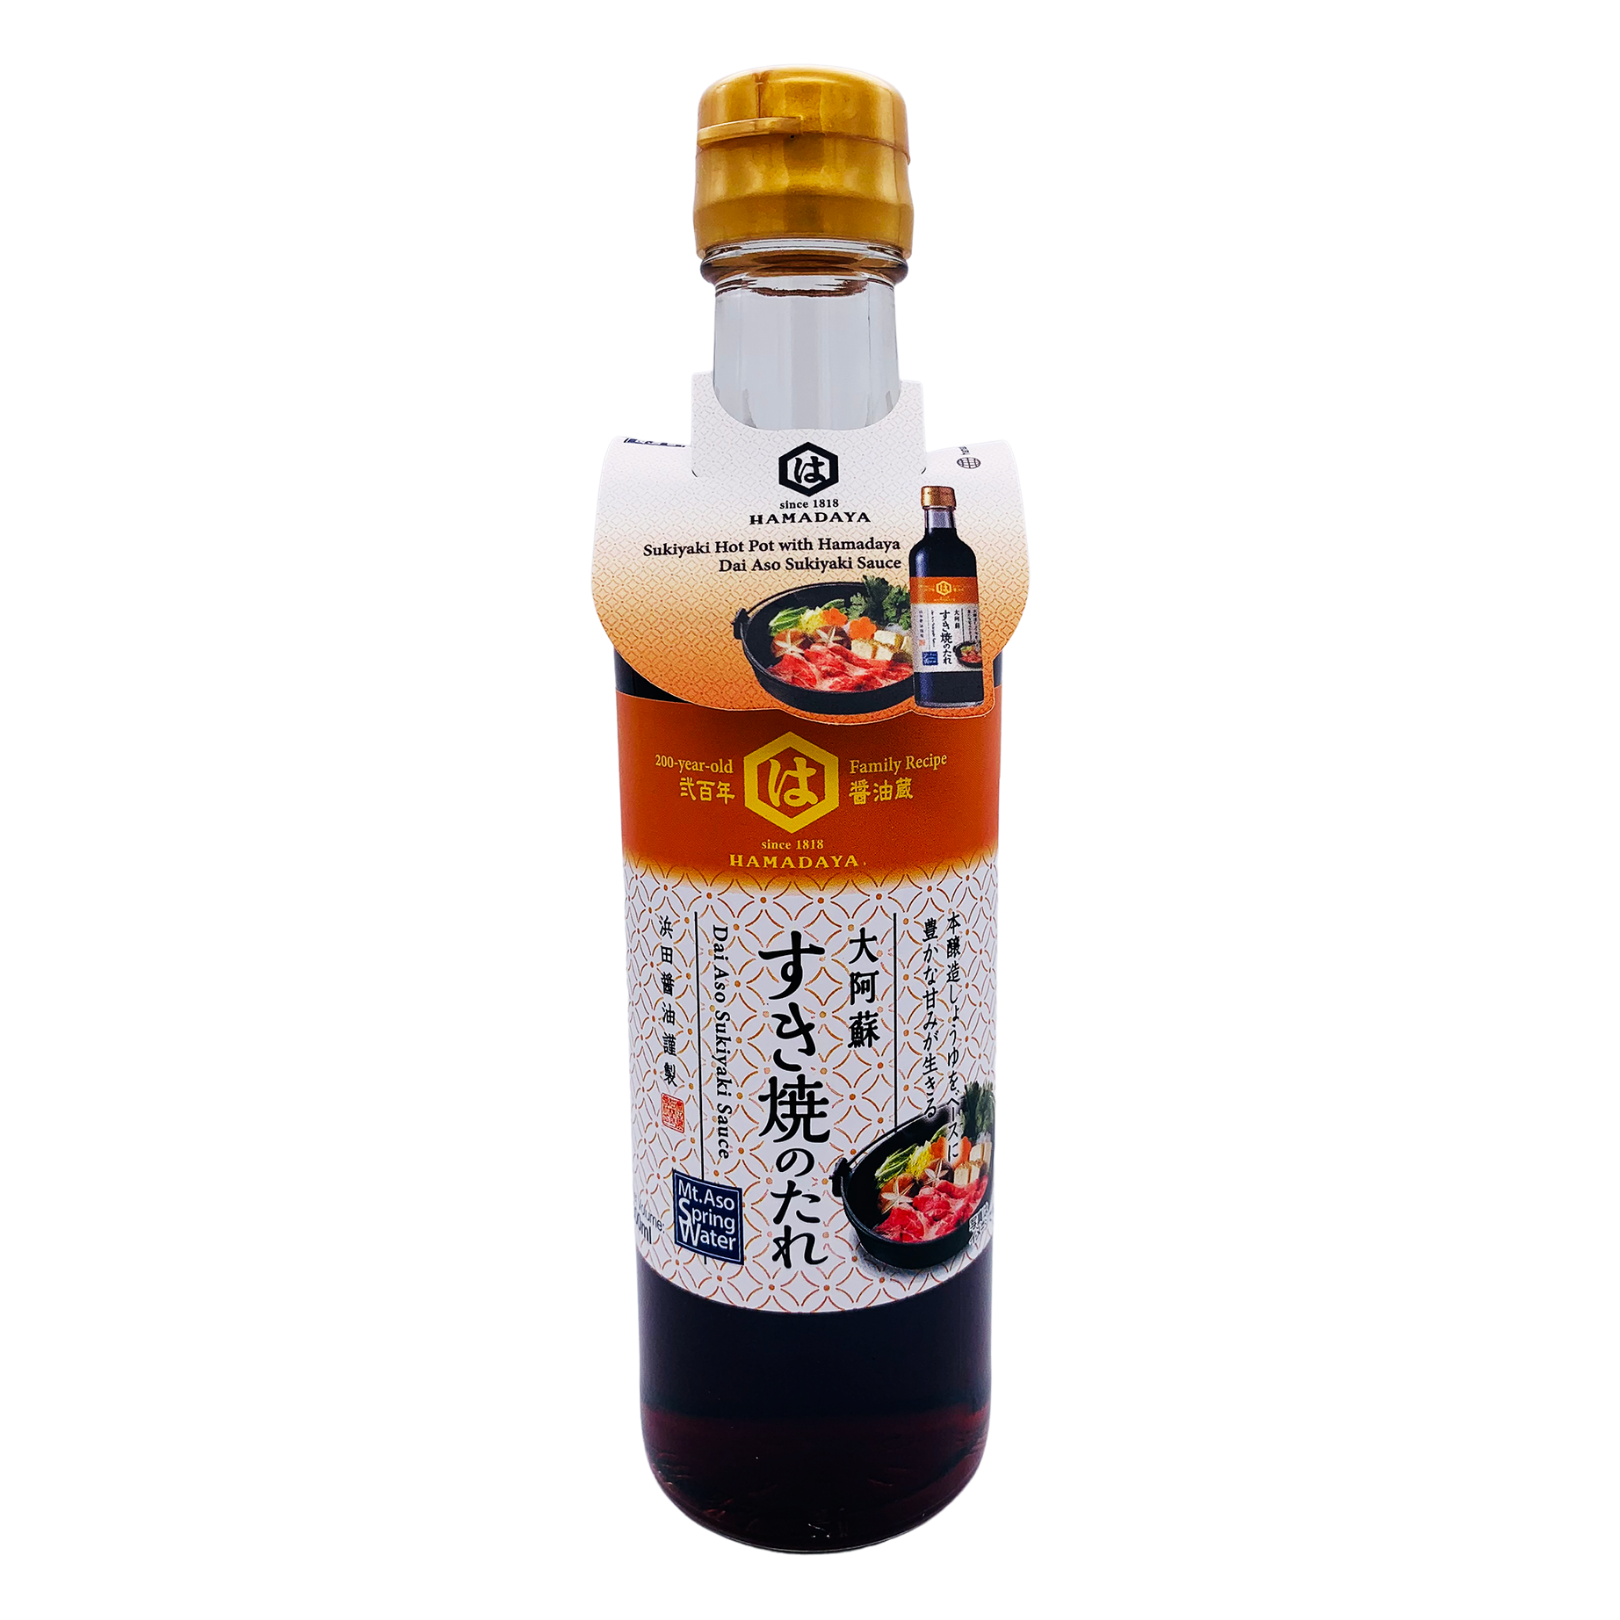 Dai Aso Sukiyaki Sauce 300ml by Hamadaya